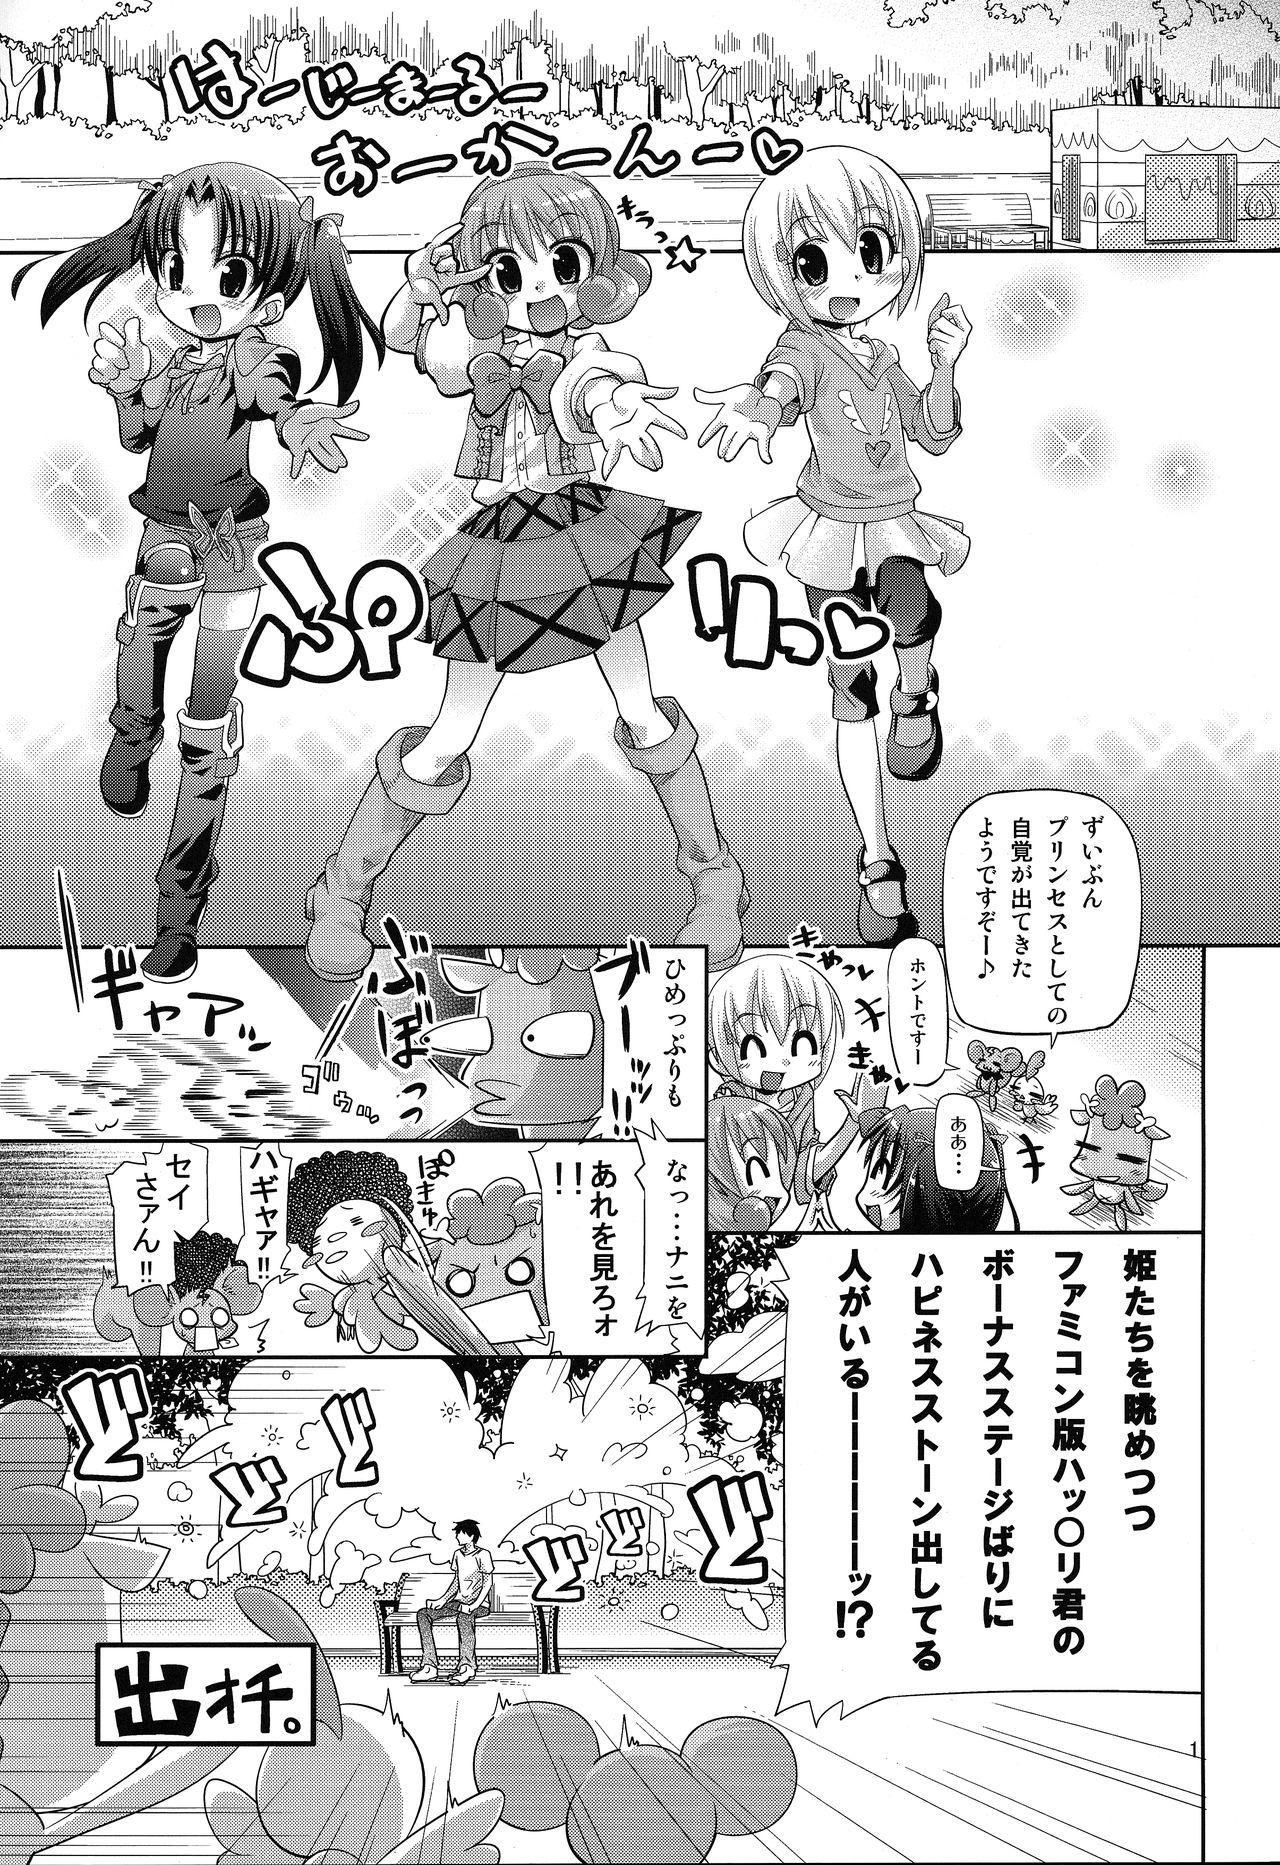 Amateur 無限ハピネストーン増殖withoutひめチェン - Hime chen otogi chikku idol lilpri Glamcore - Page 2